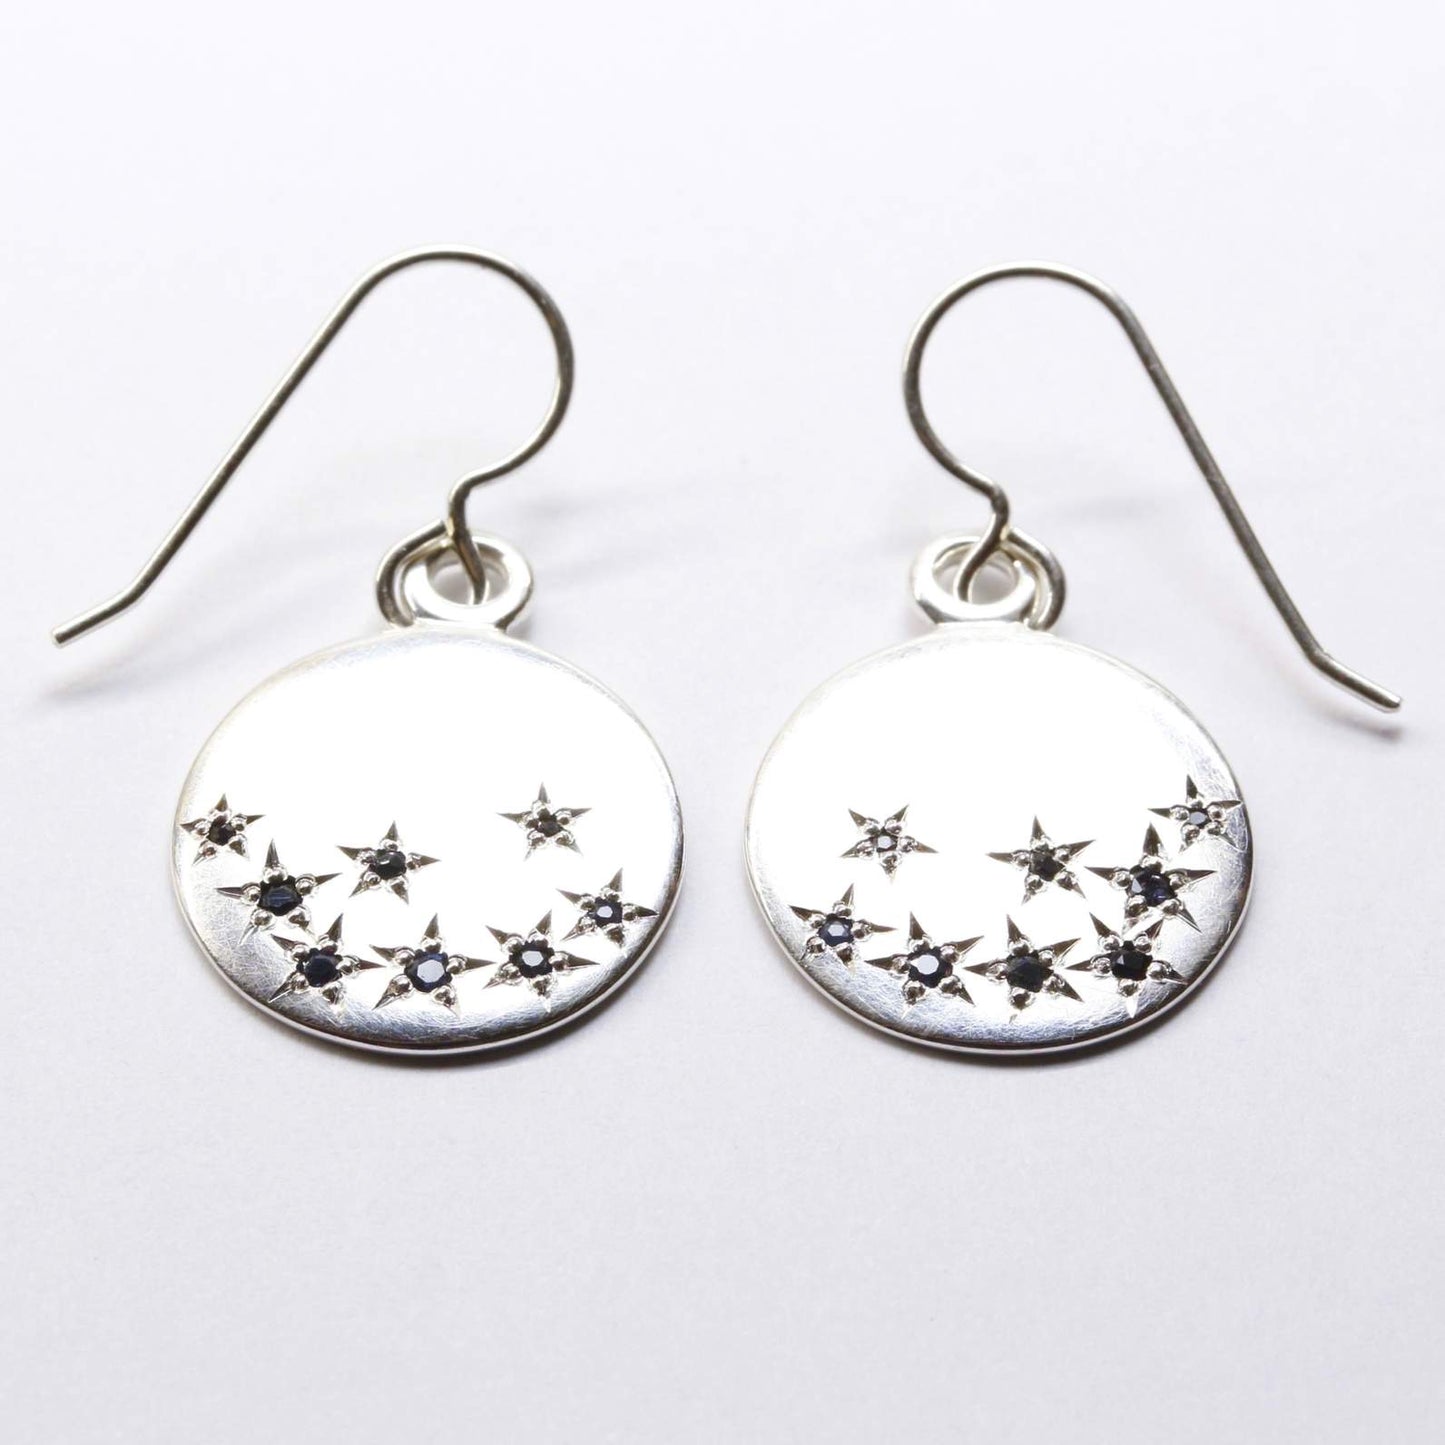 Falling stars earrings